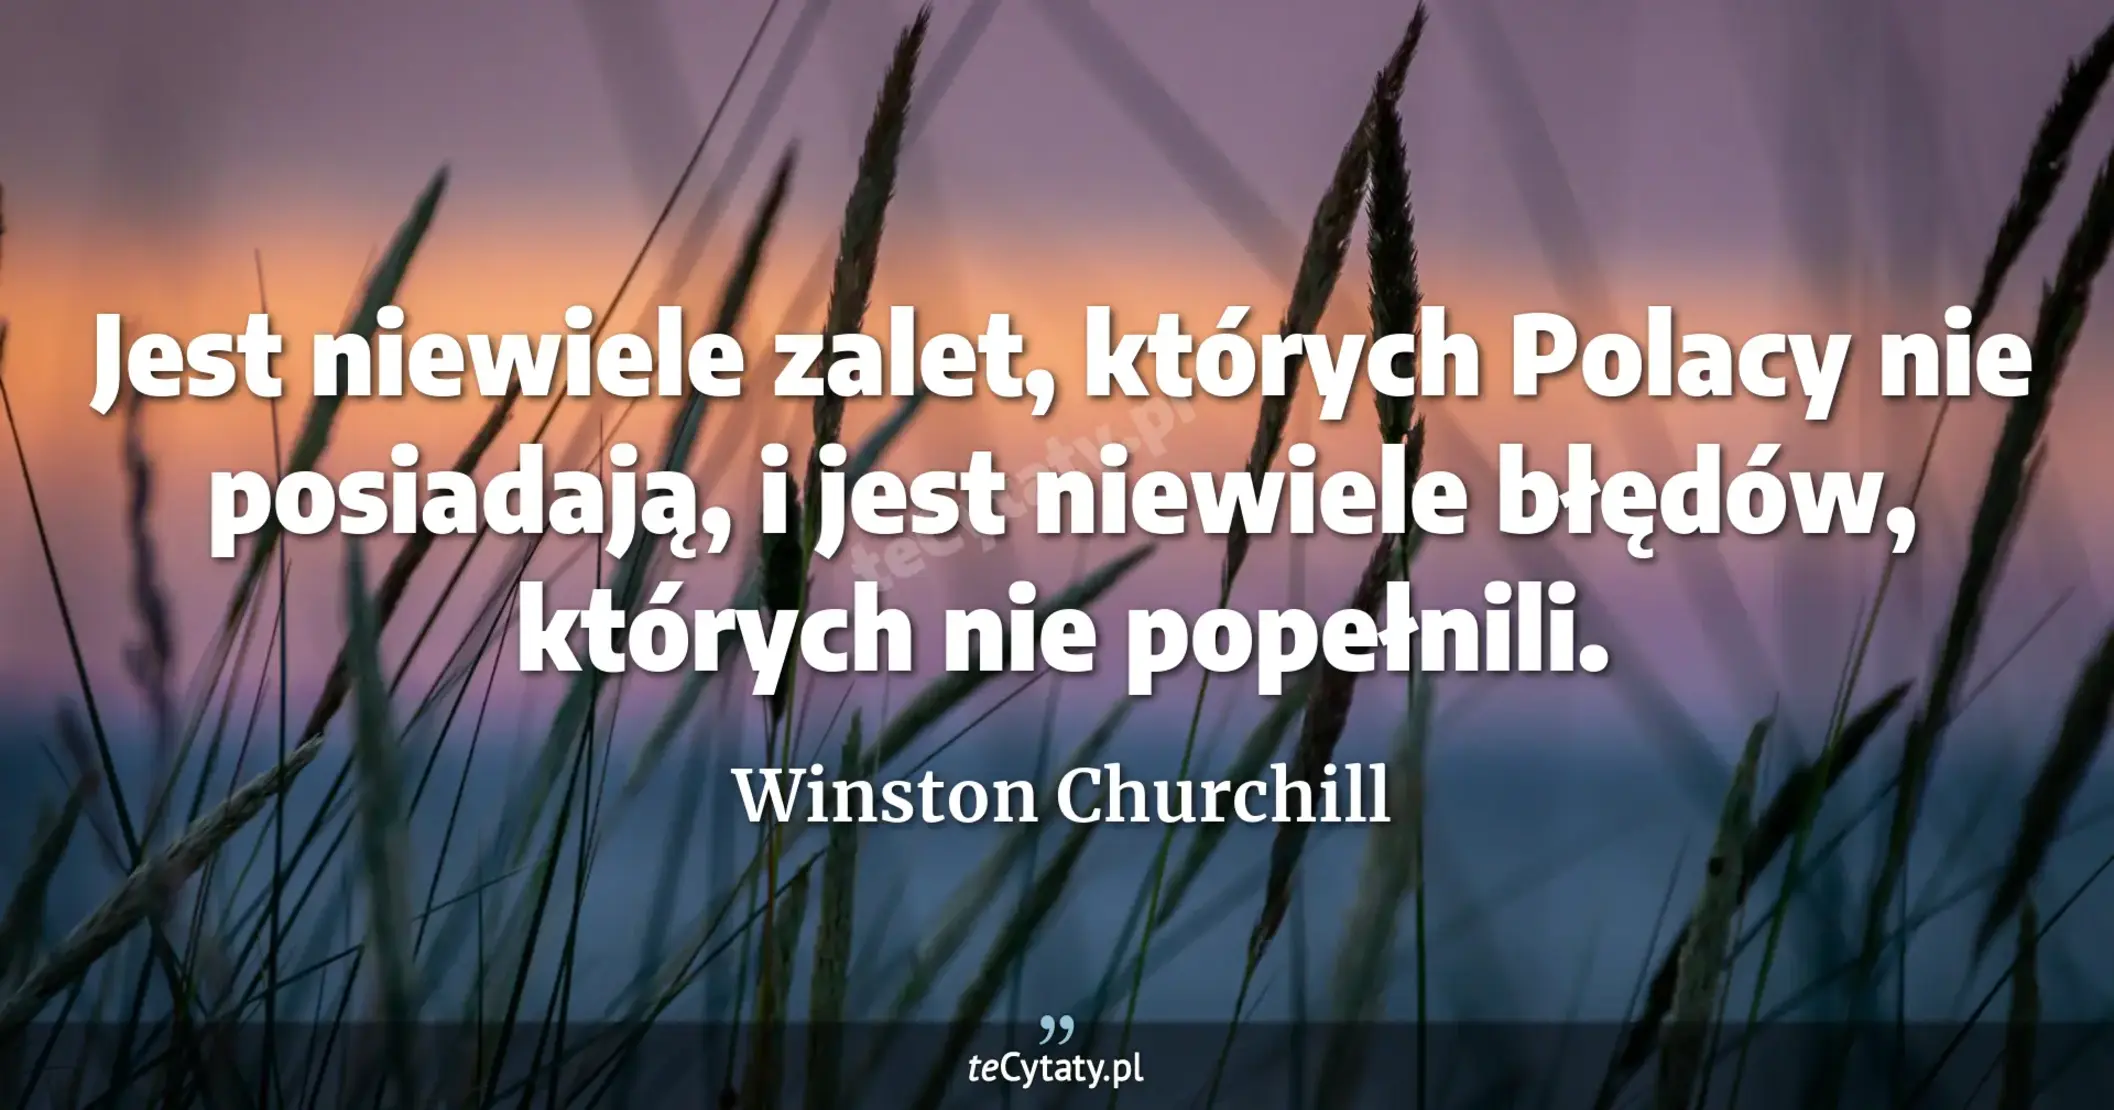 Jest niewiele zalet, których Polacy nie posiadają, i jest niewiele błędów, których nie popełnili. - Winston Churchill